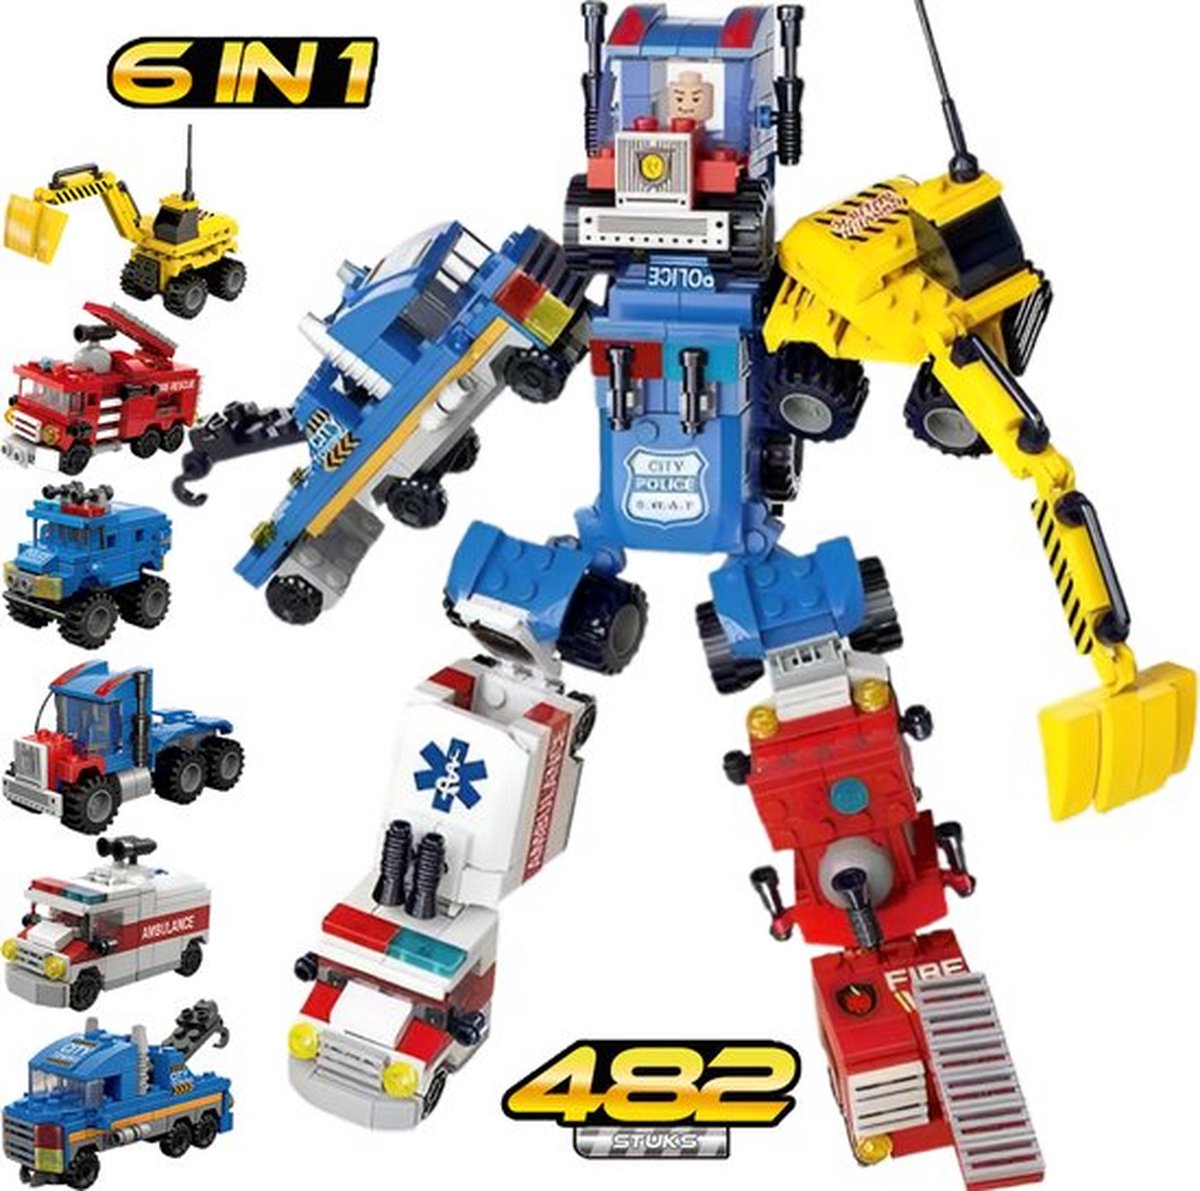 QuchiQ™ Robot speelgoed bouwpakket - STEM speelgoed - Bouwsets - Robot auto Speelgoed - Politie - Brandweerauto - Speelfiguren sets - 482 bouwstenen - QuchiQ